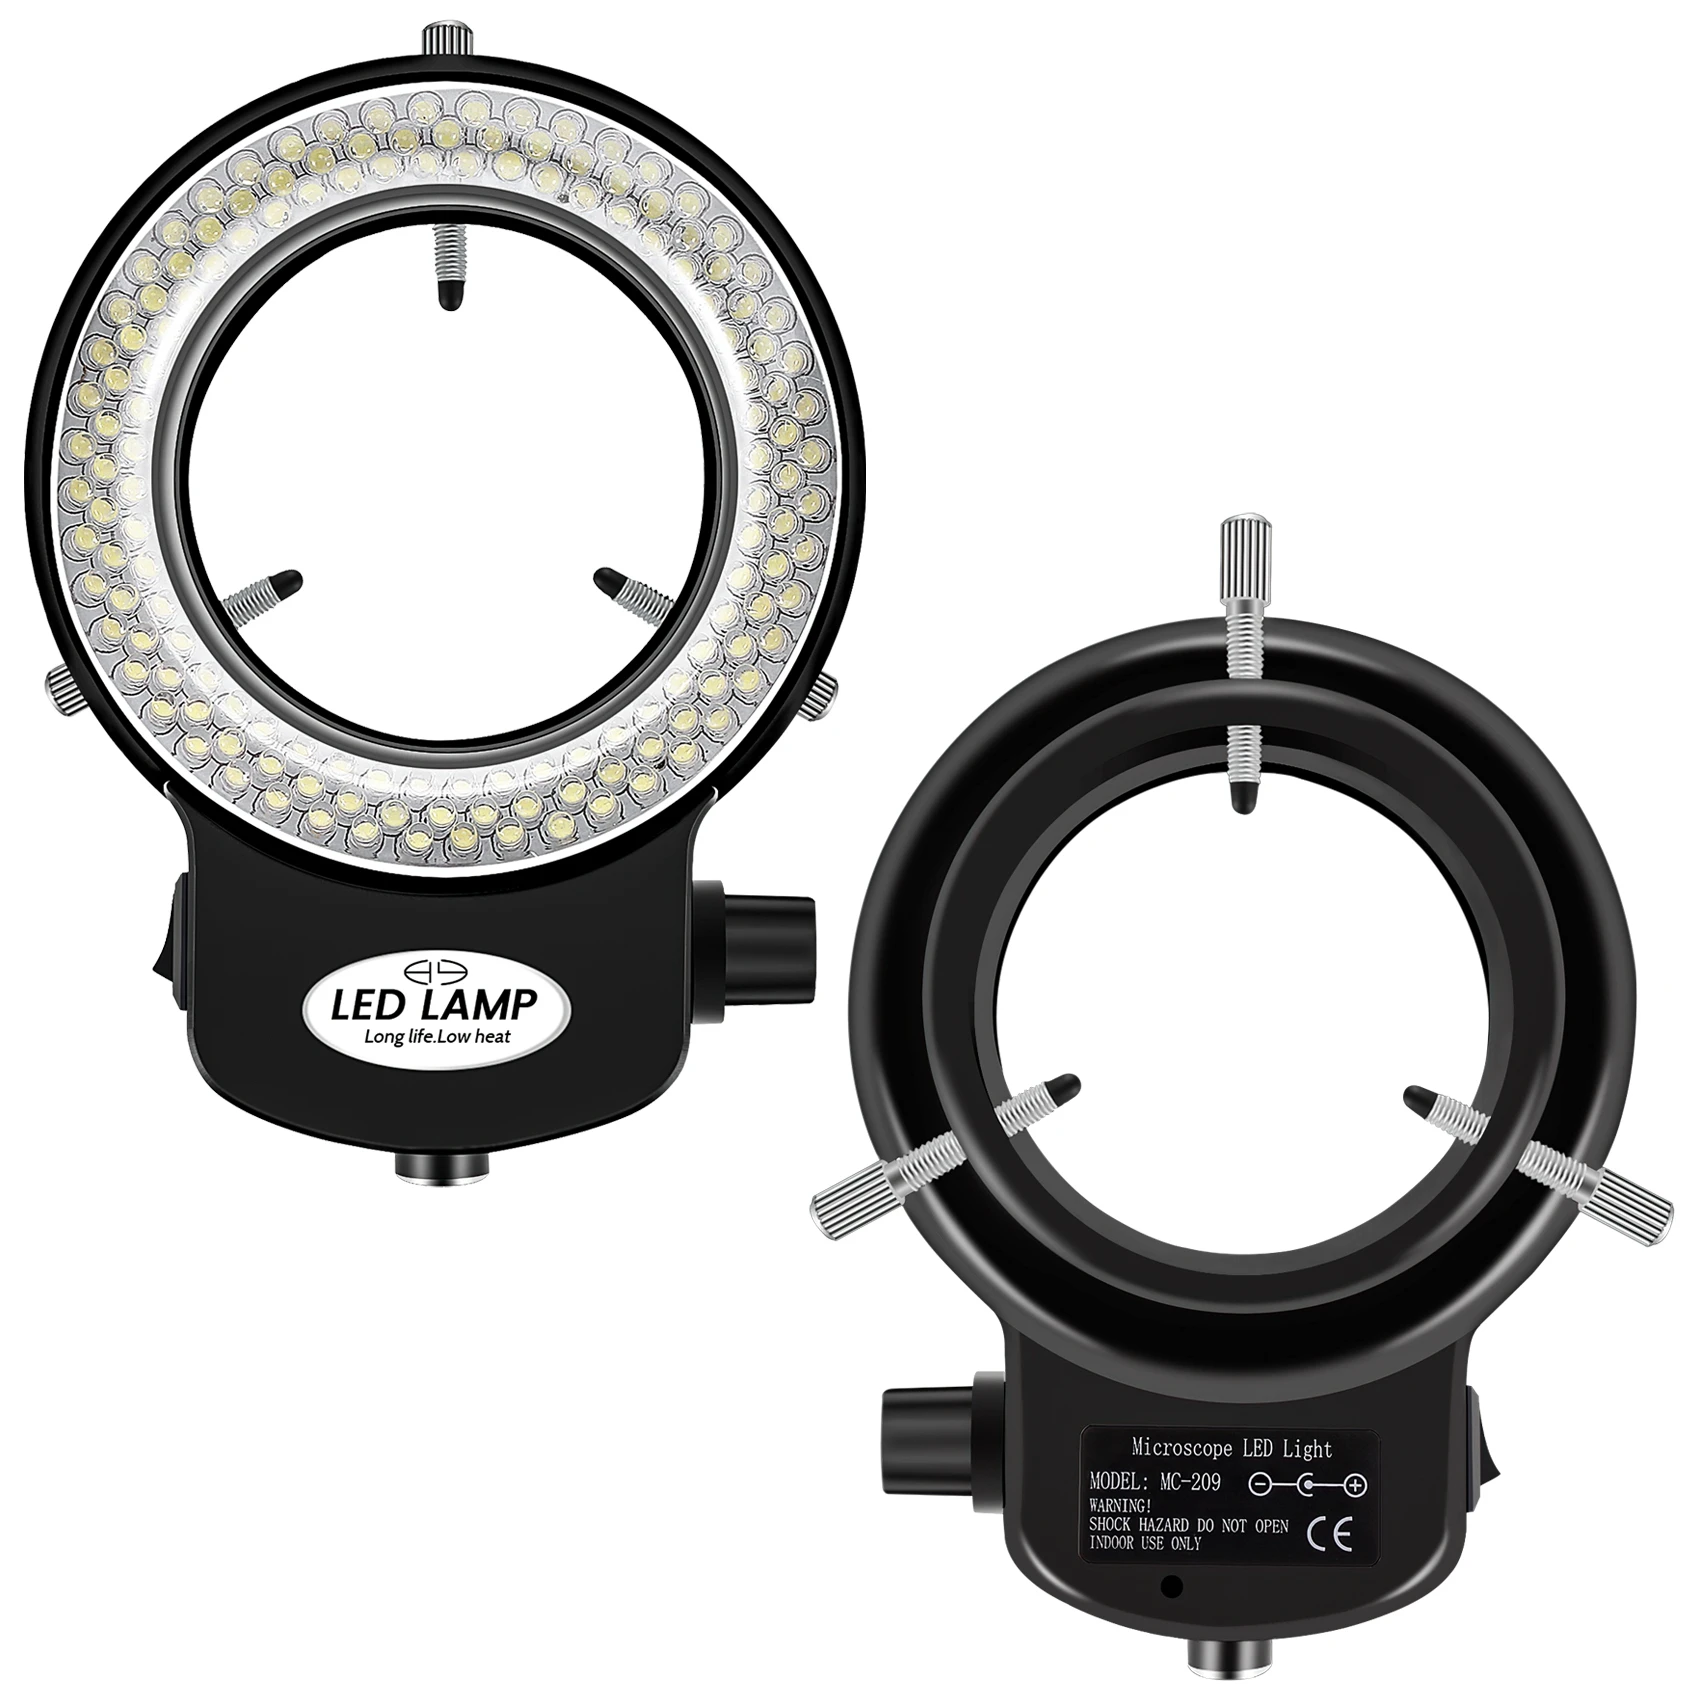 144 LED miniszkóp gyűrű fény gyűrű fény 0 - 100% állítható lámpa miniszkóp gyűrűfényhez - 3